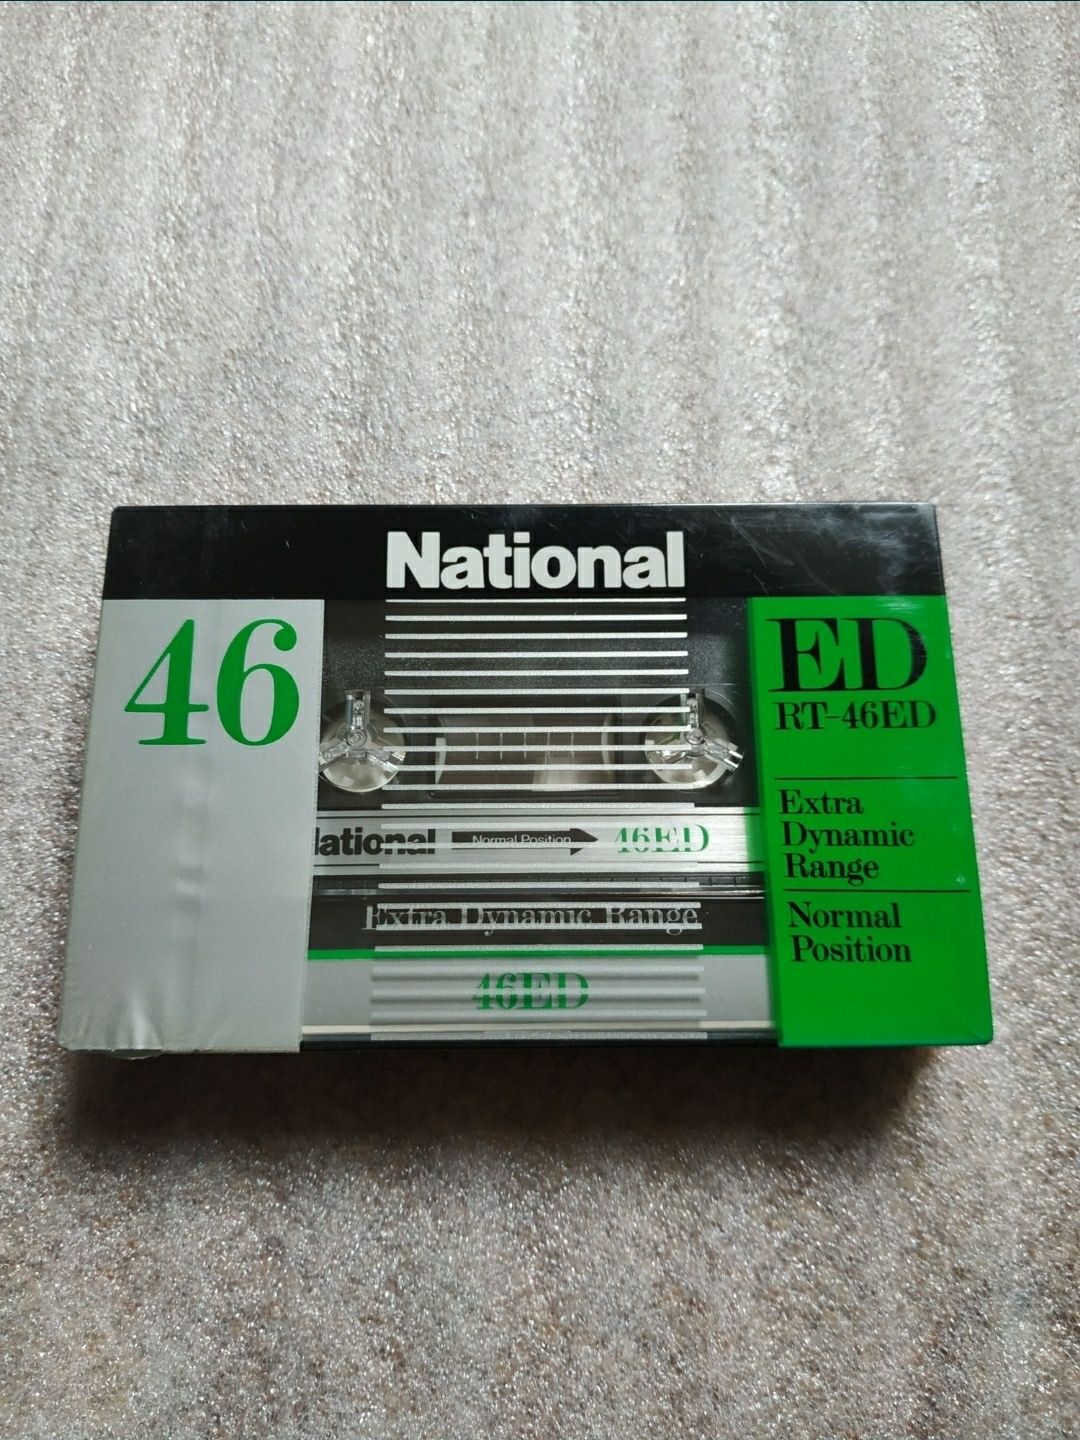 аудиокассета National ED 46 Made In Japan 1982 год